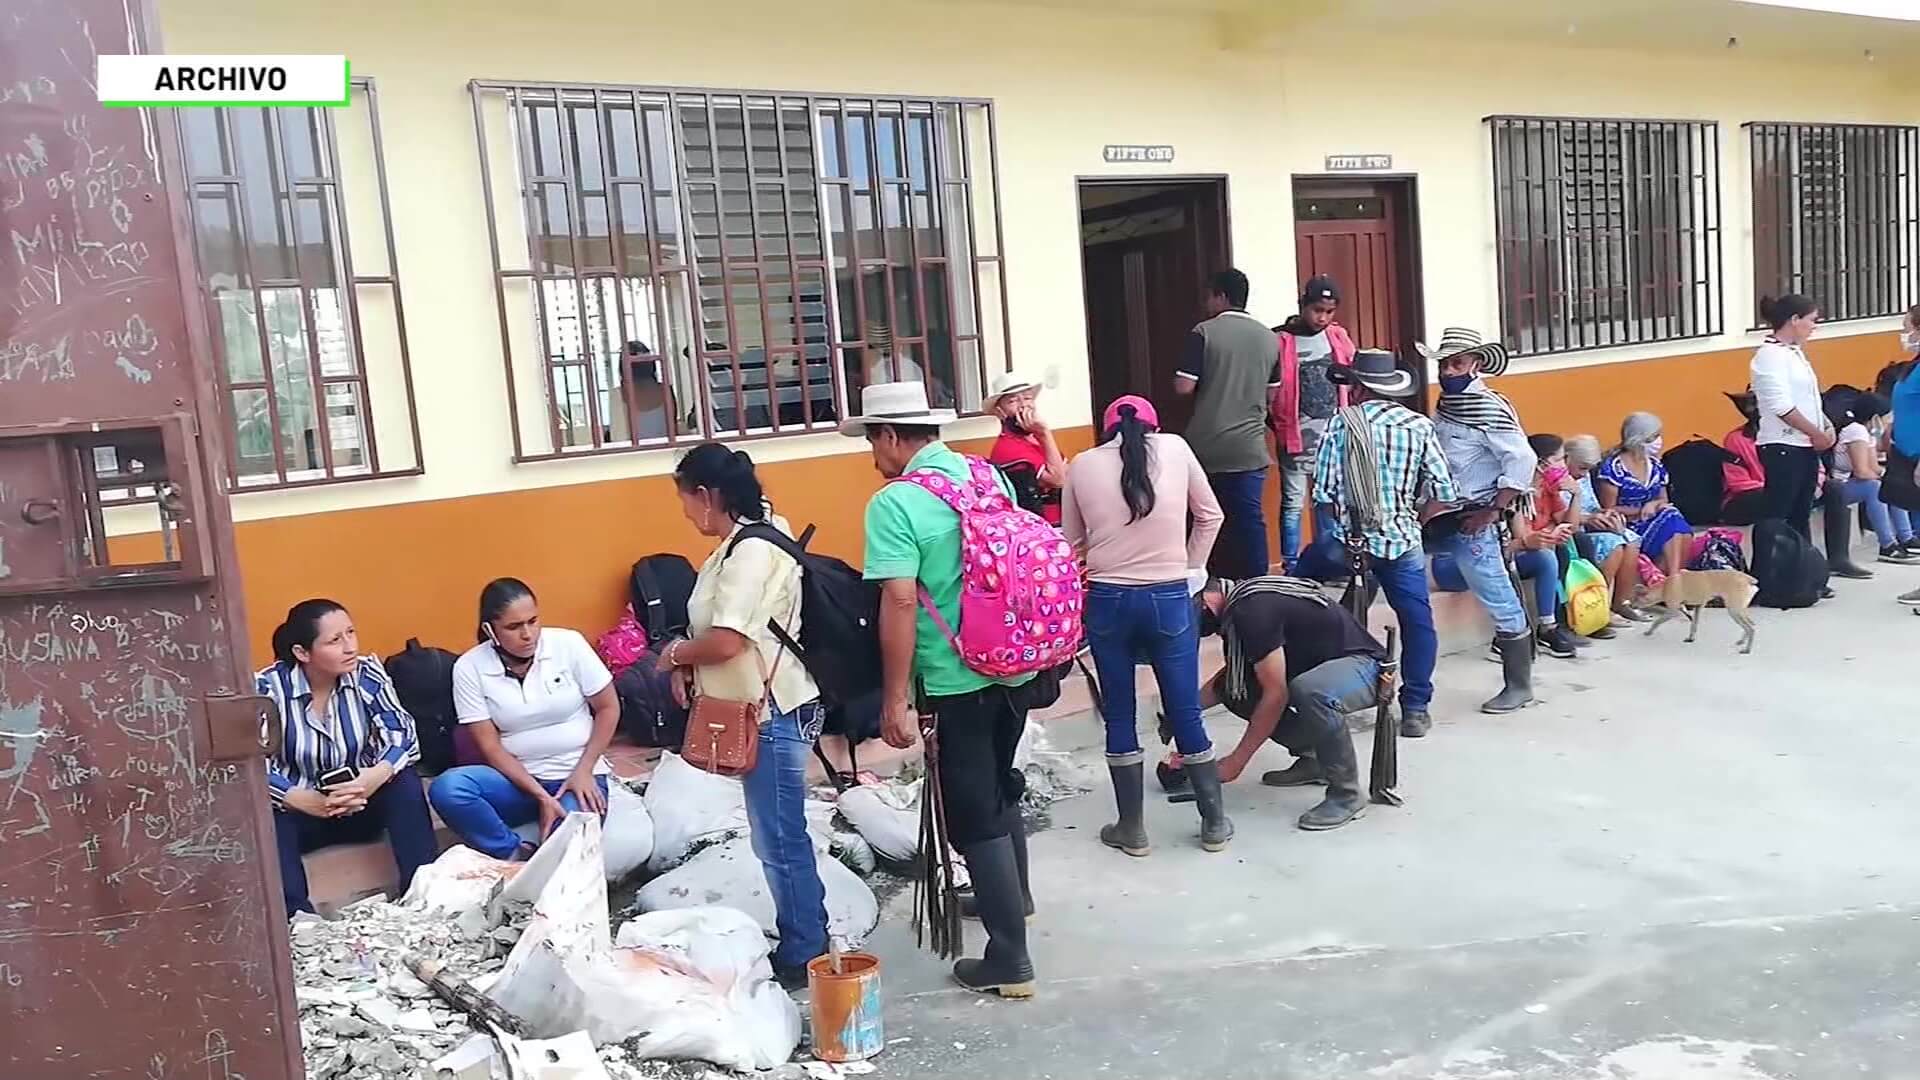 “Medellín acoge el 10 % de desplazados de Colombia”: Unidad de Víctimas